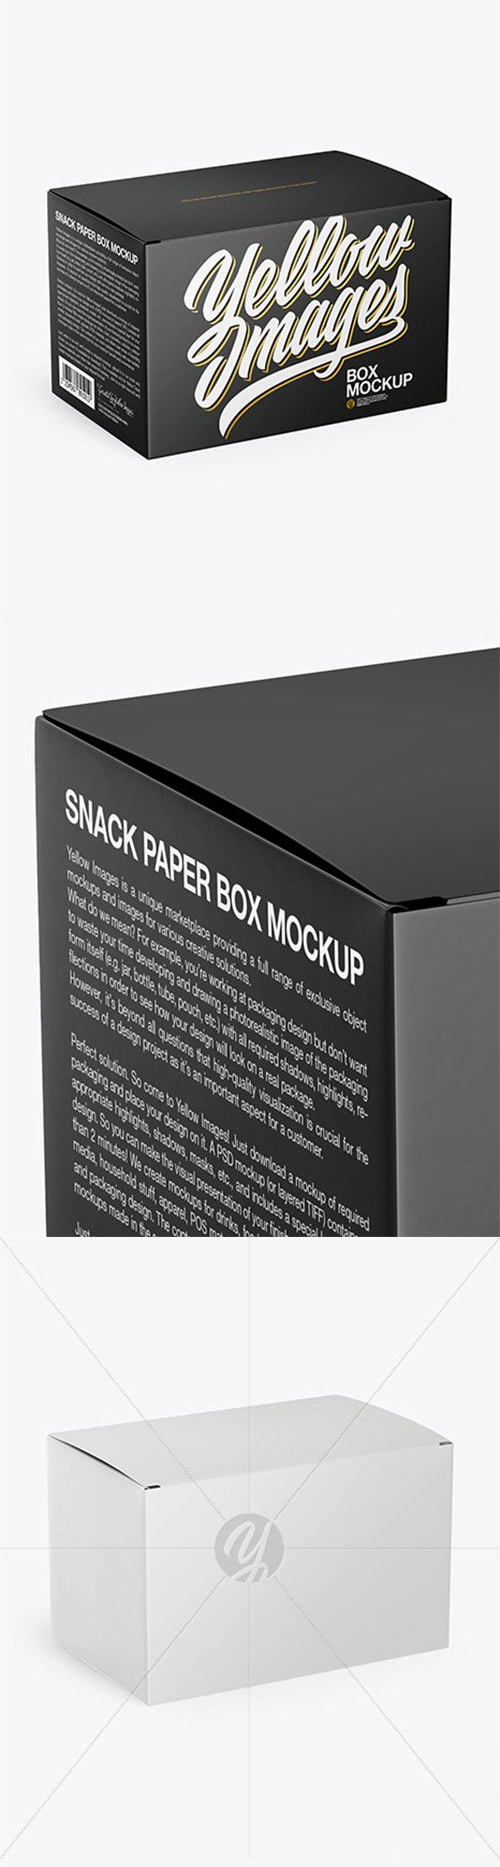 Glossy Paper Box Mockup 49053